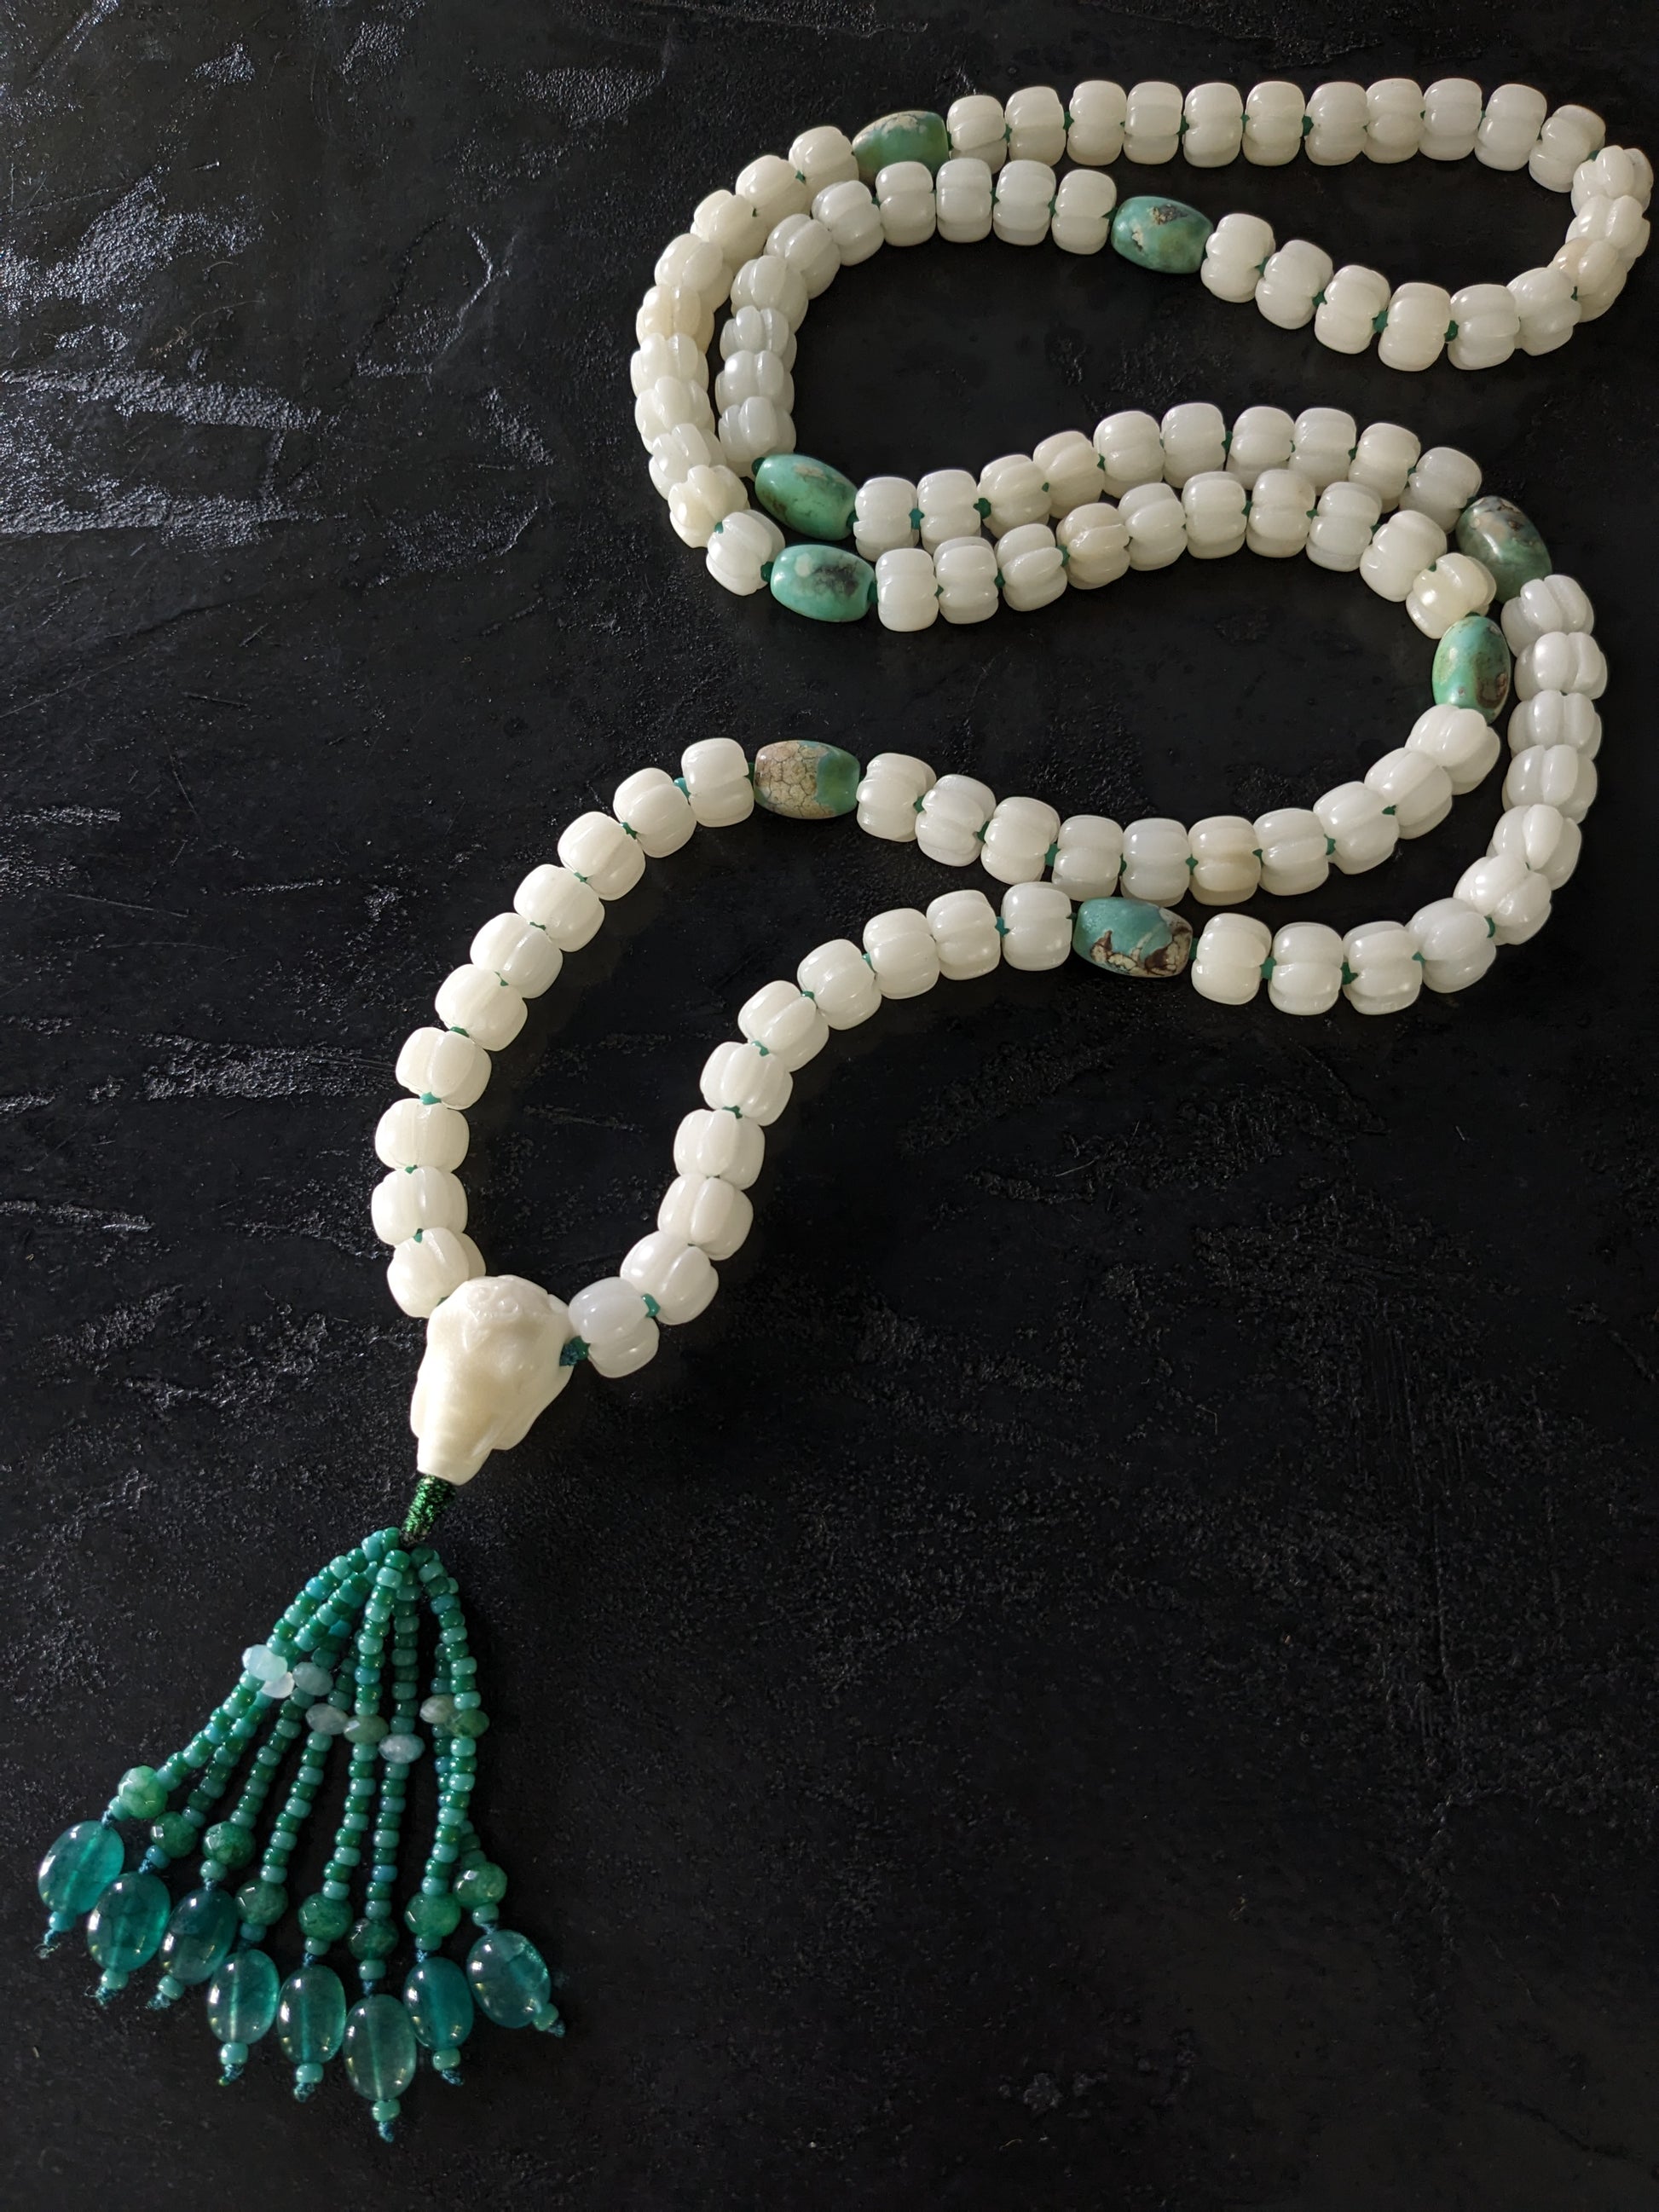 Chapelet bouddhiste pour la méditation en perles de prière et perles d'agate naturelle. Il est orné d'une tête de Ganesh sculptée